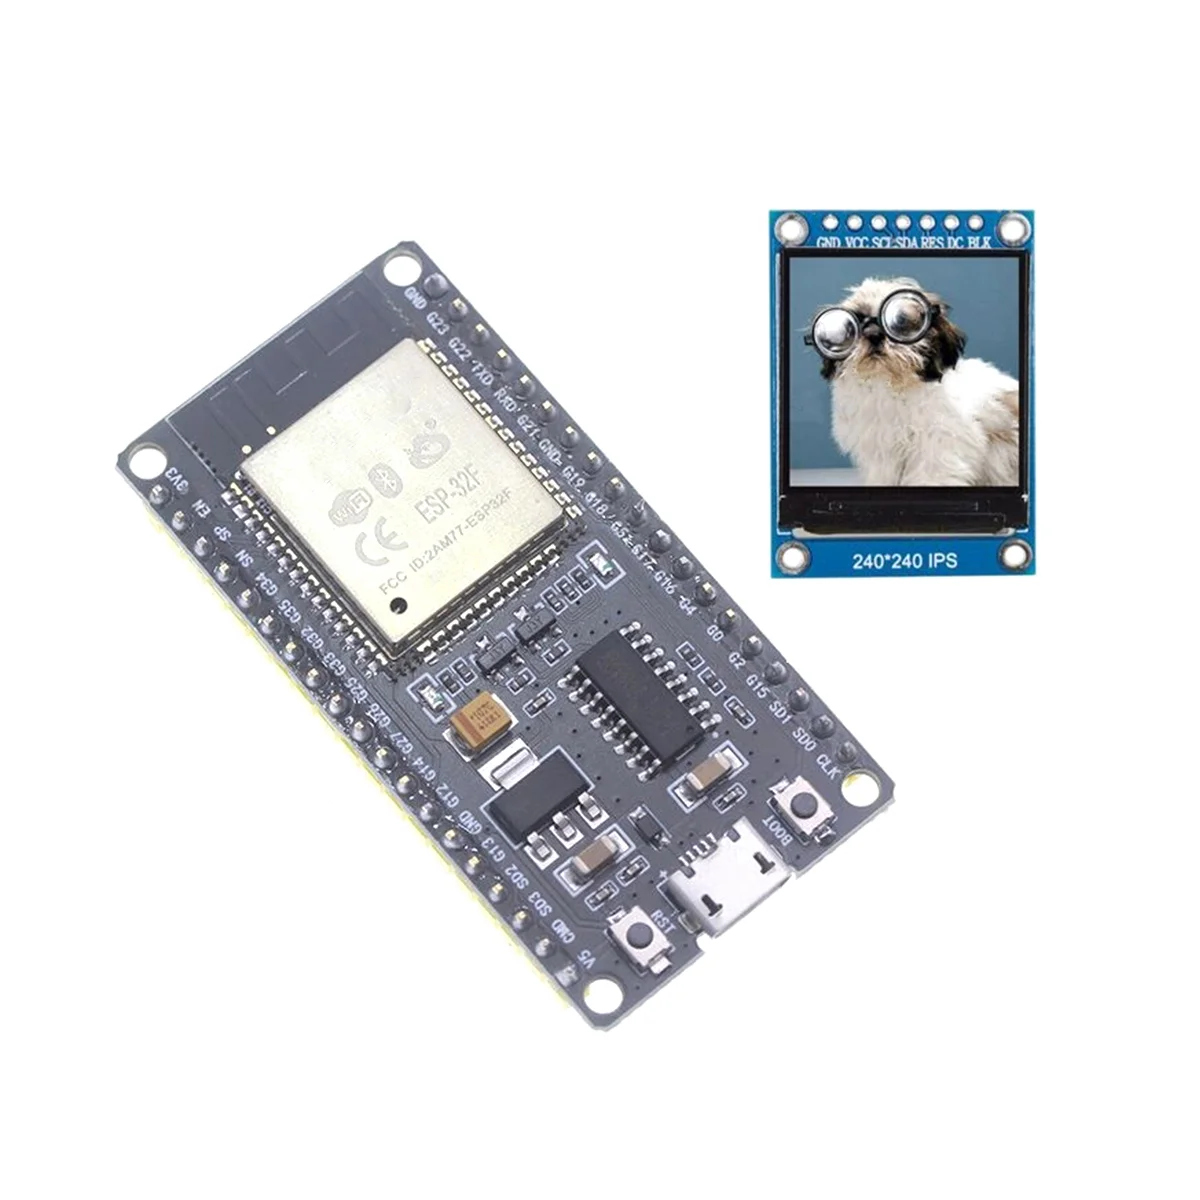 ESP32F modul fejlesztő kártya CH340 illesztőprogram vezeték nélküli WiFi Bluetooth fejlesztőkártya 1,3 hüvelykes színes képernyővel - 0